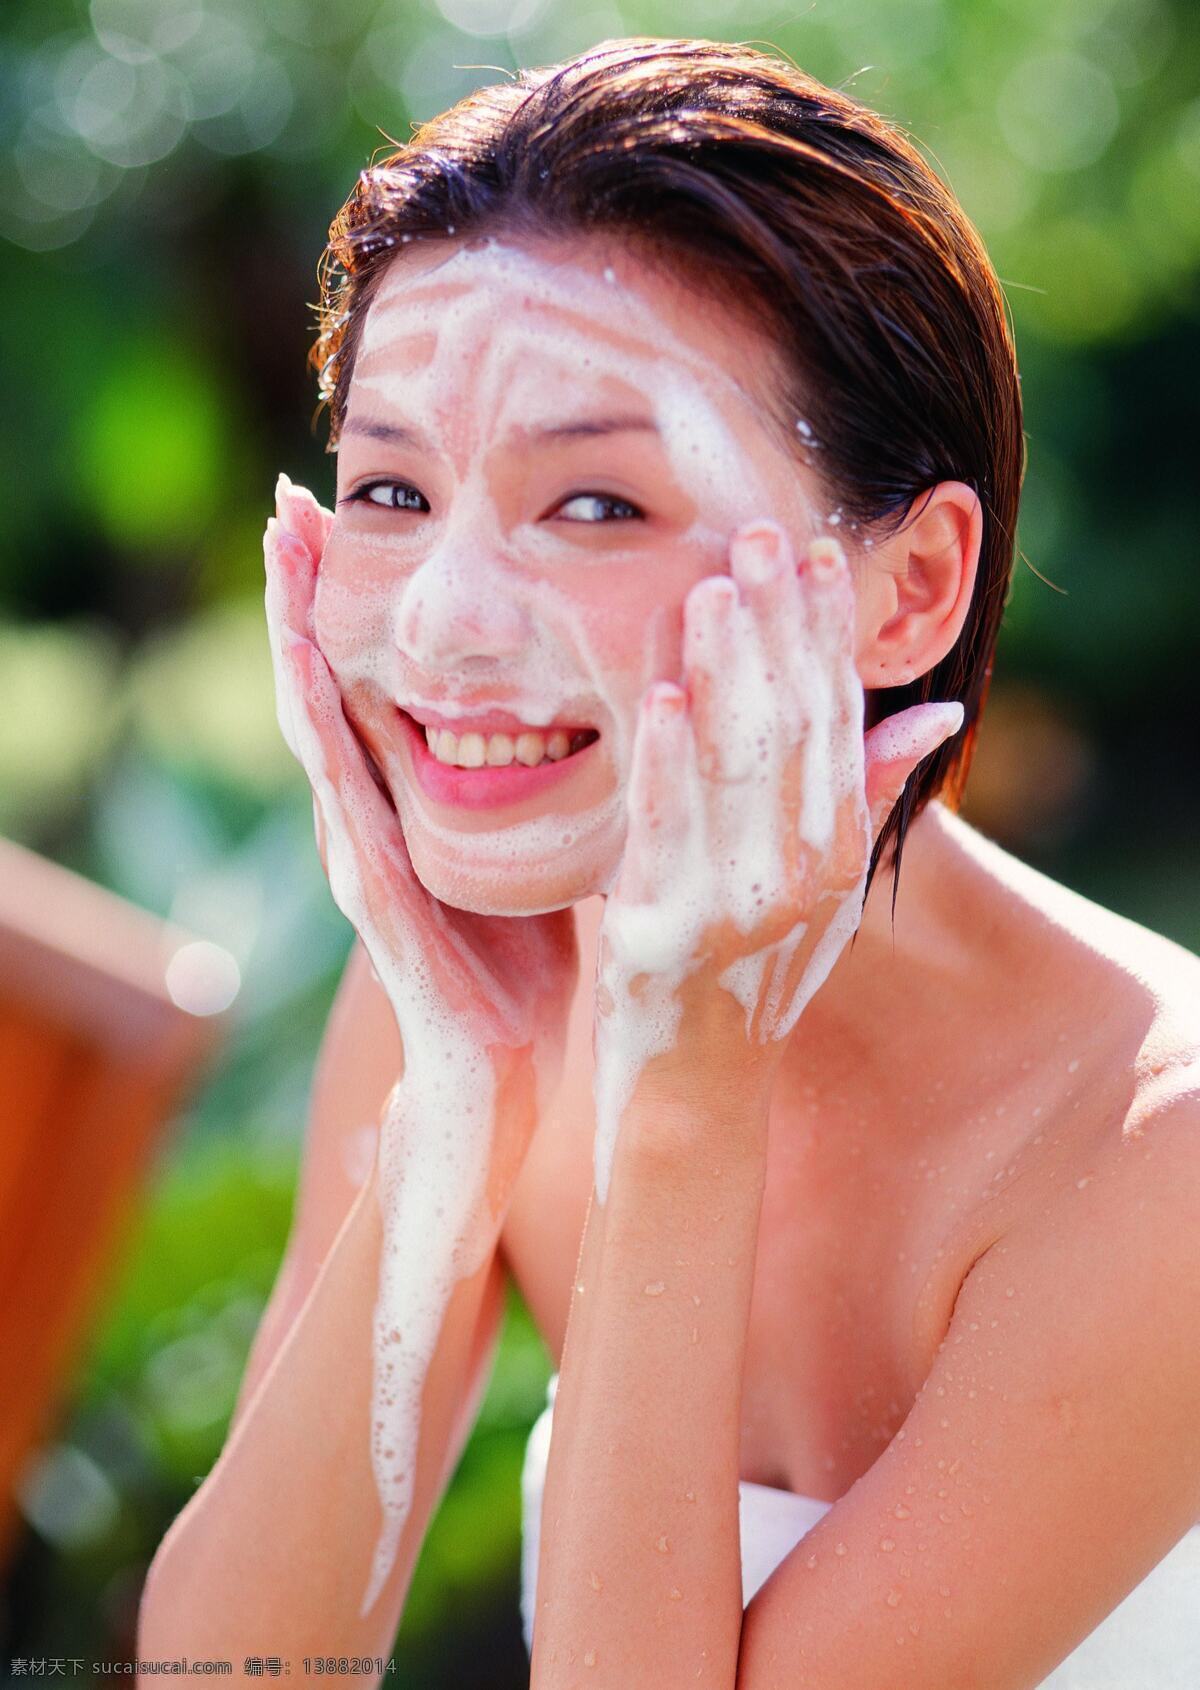 脸上 满 泡沫 女人 水疗 美容 养生 护肤 spa 女性 美体 洁面 洗脸 生活人物 人物图片